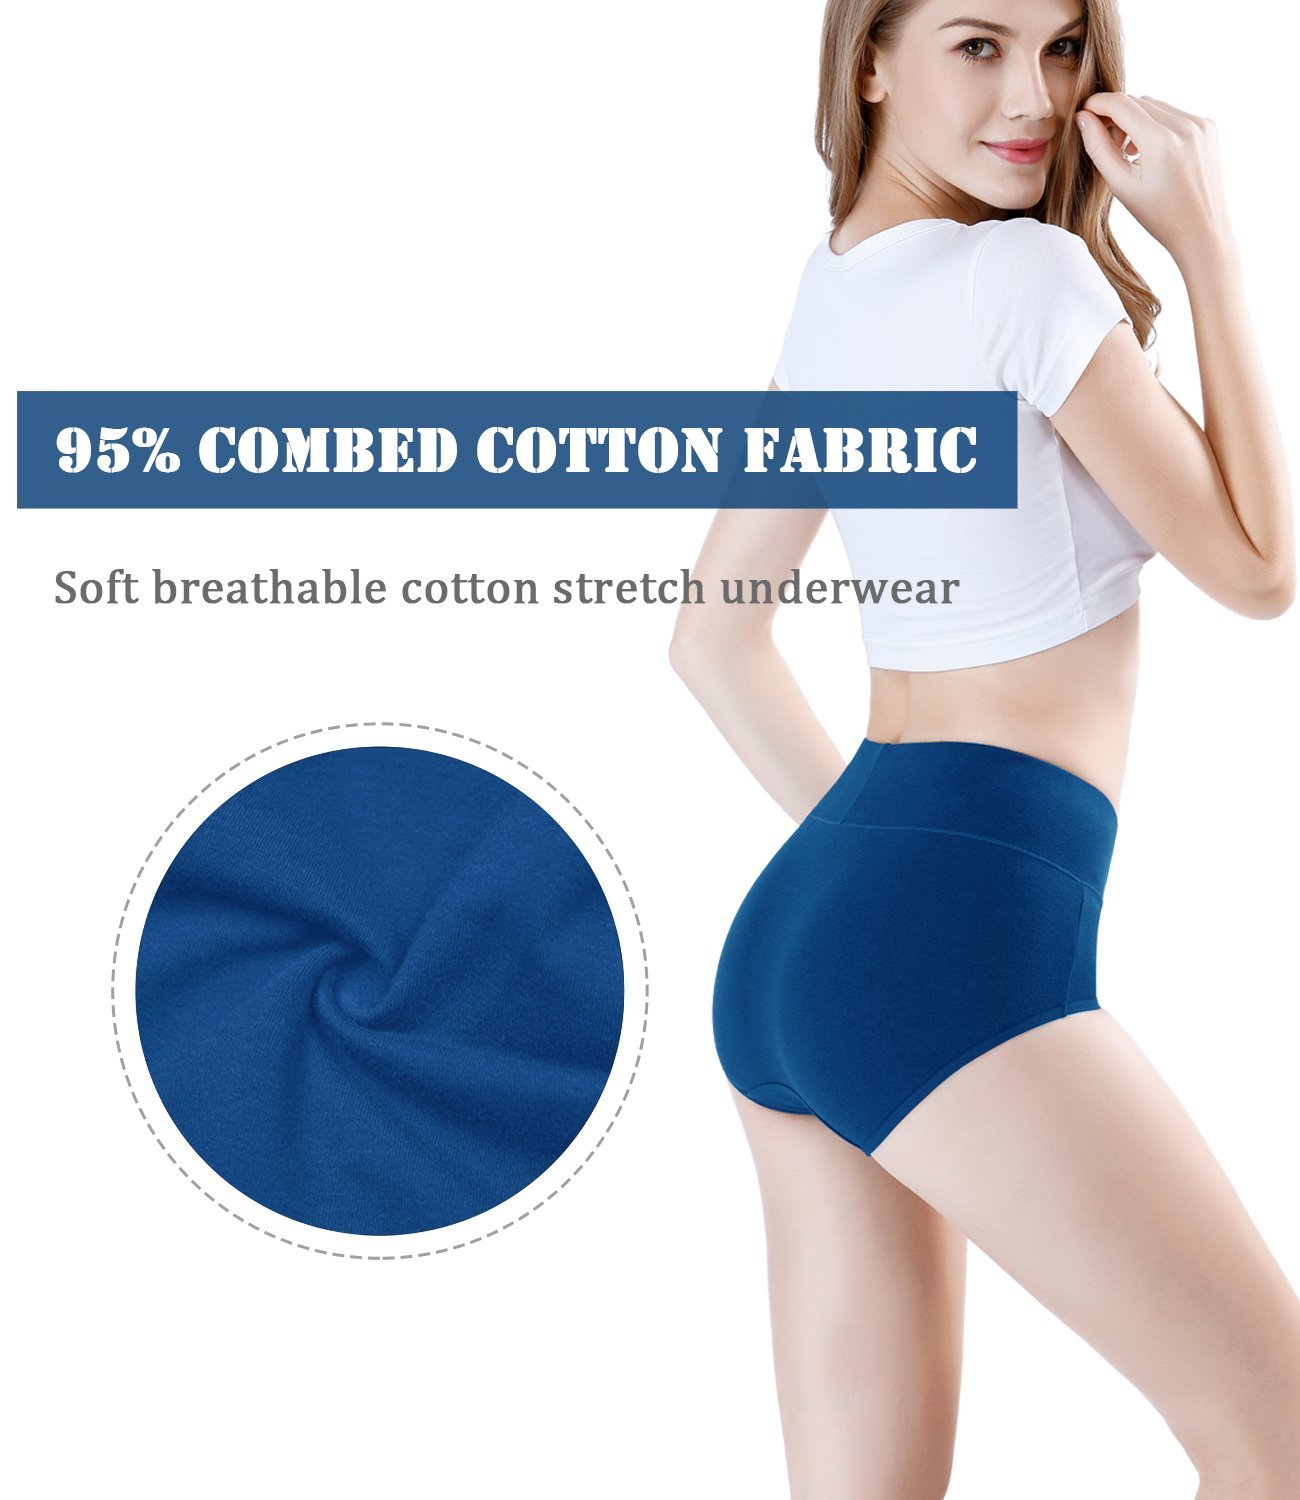 Fakespot  Wirarpa Women S Cotton Underwear Hig Fake Review